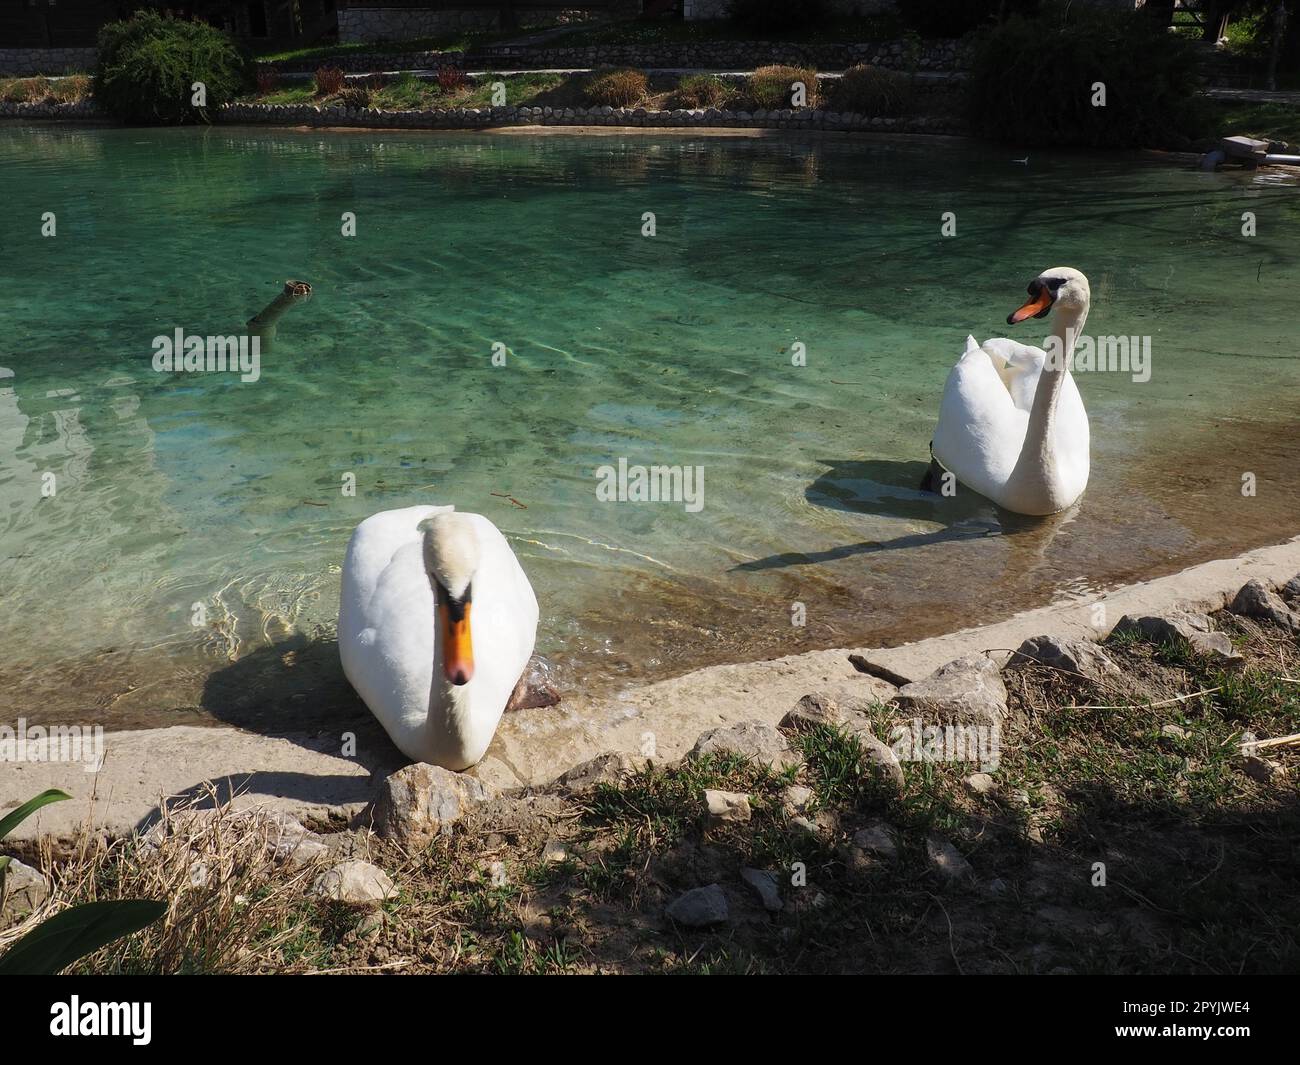 Zwei weiße Schwäne am Ufer des Reservoirs. Vögel am Wasser putzen ihre Federn. Stanisici, Bijelina, Bosnien und Herzegowina, ein Zoo in einem Ethno-Dorf. Die Fauna Europas Stockfoto